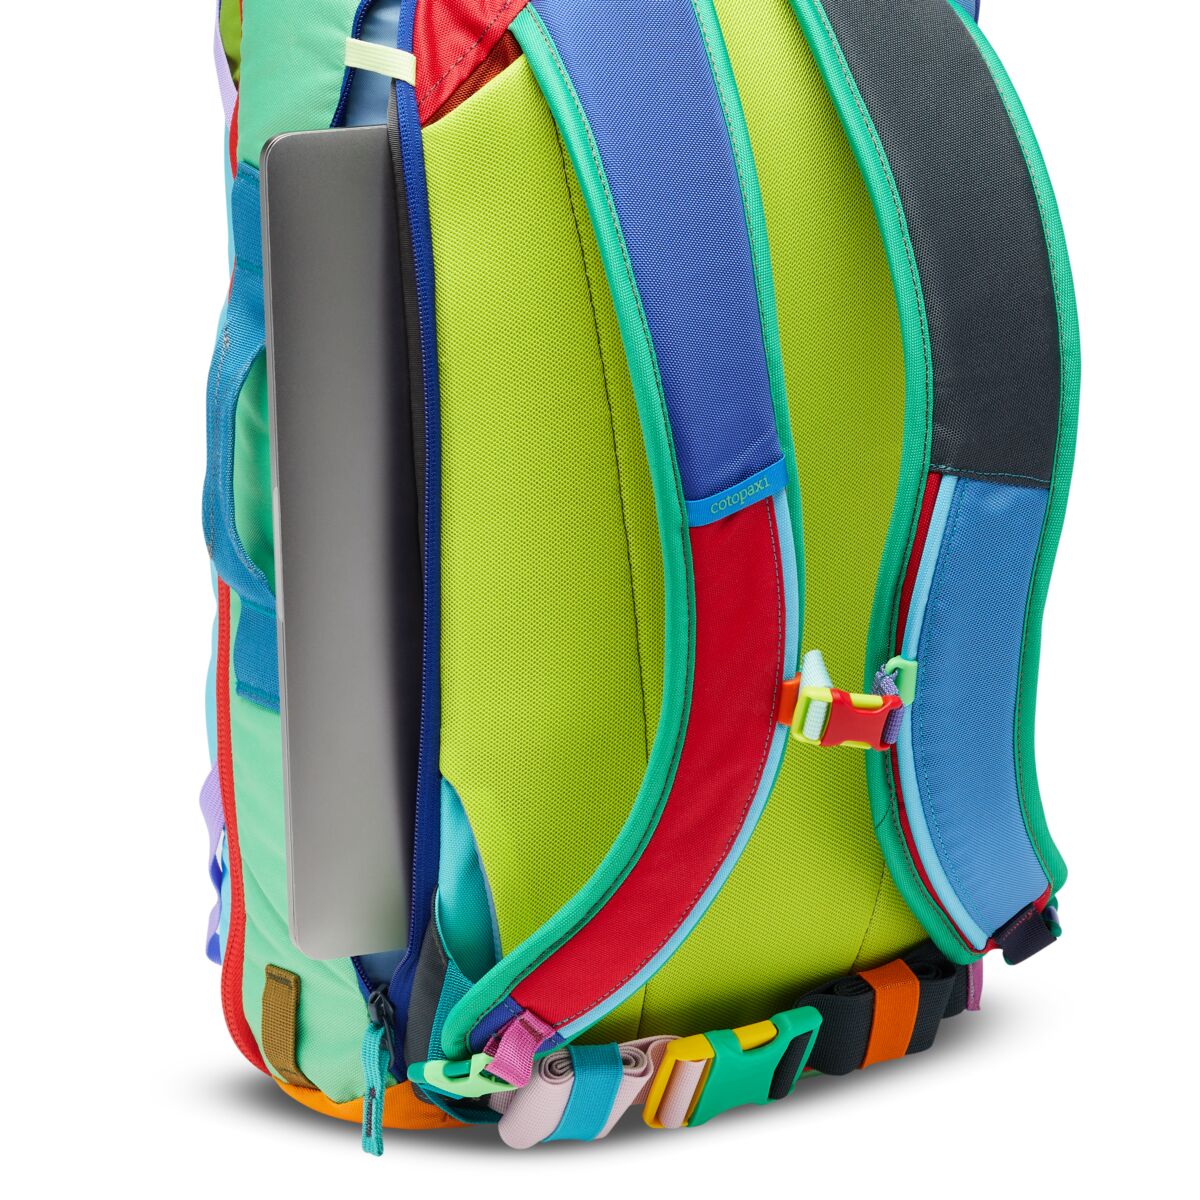 Backpack Bag Cotopaxi Allpa 28 L Dia.